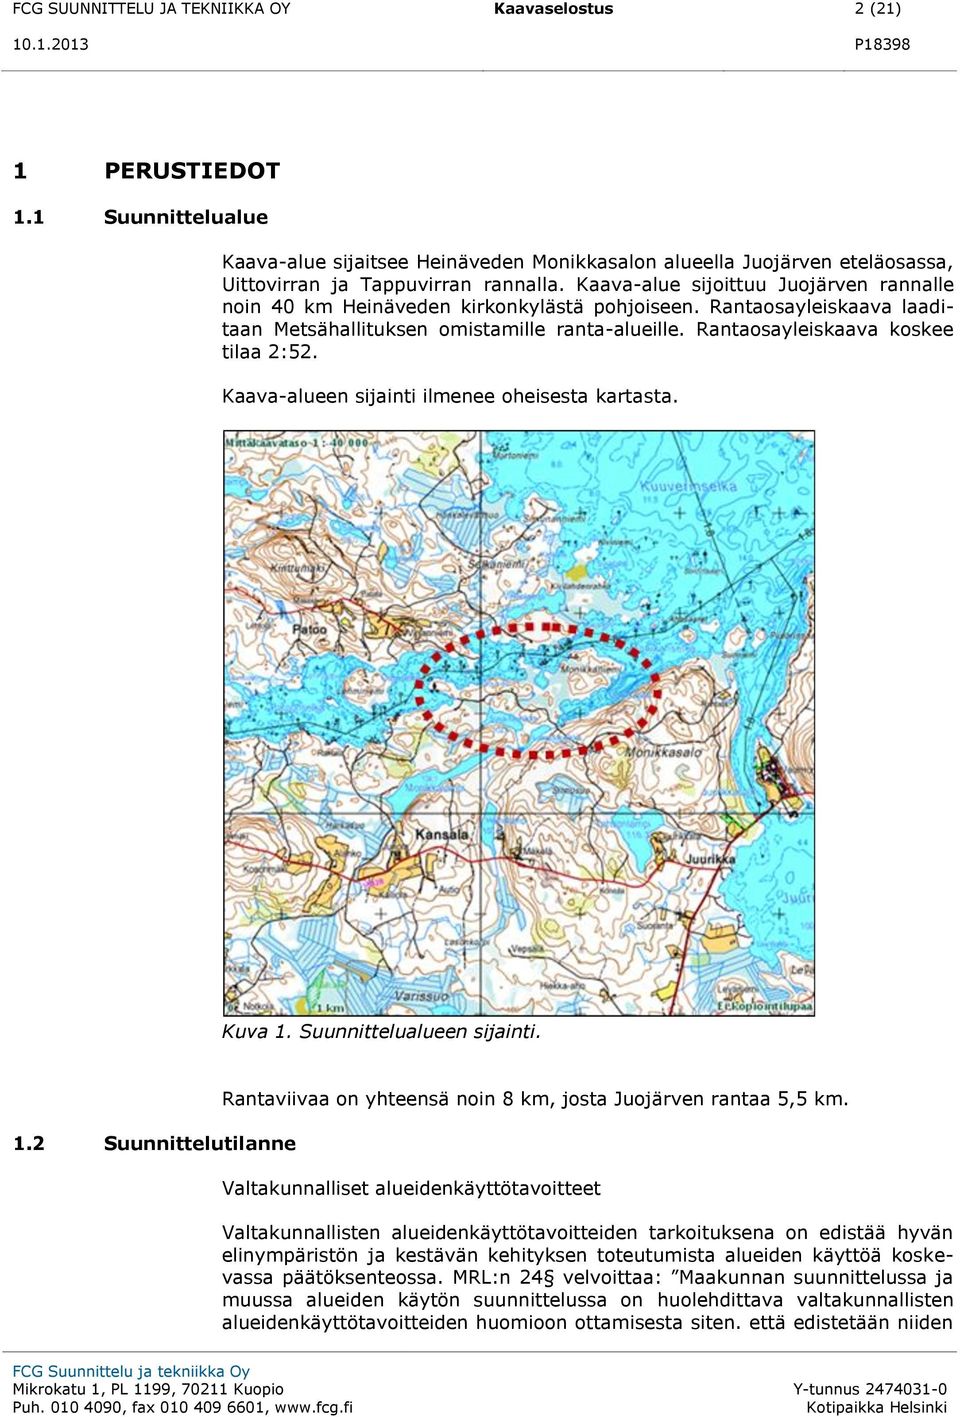 Kaava-alueen sijainti ilmenee oheisesta kartasta. Kuva 1. Suunnittelualueen sijainti. 1.2 Suunnittelutilanne Rantaviivaa on yhteensä noin 8 km, josta Juojärven rantaa 5,5 km.